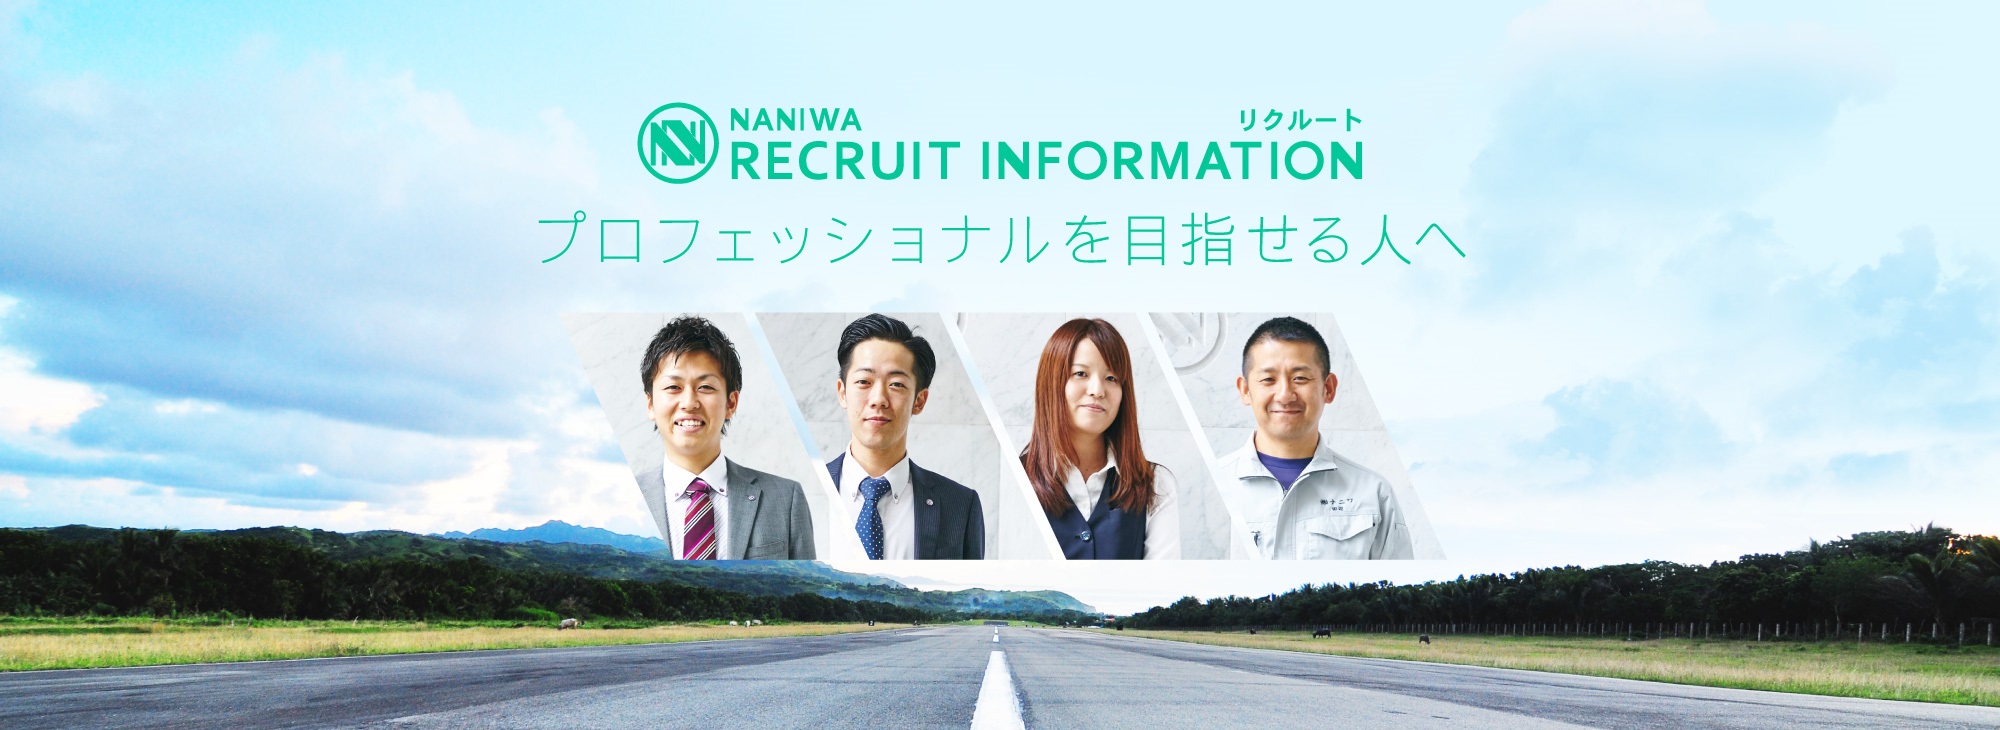 NANIWA RECRUIT INFORMATION リクルート プロフェッショナルを目指せる人へ